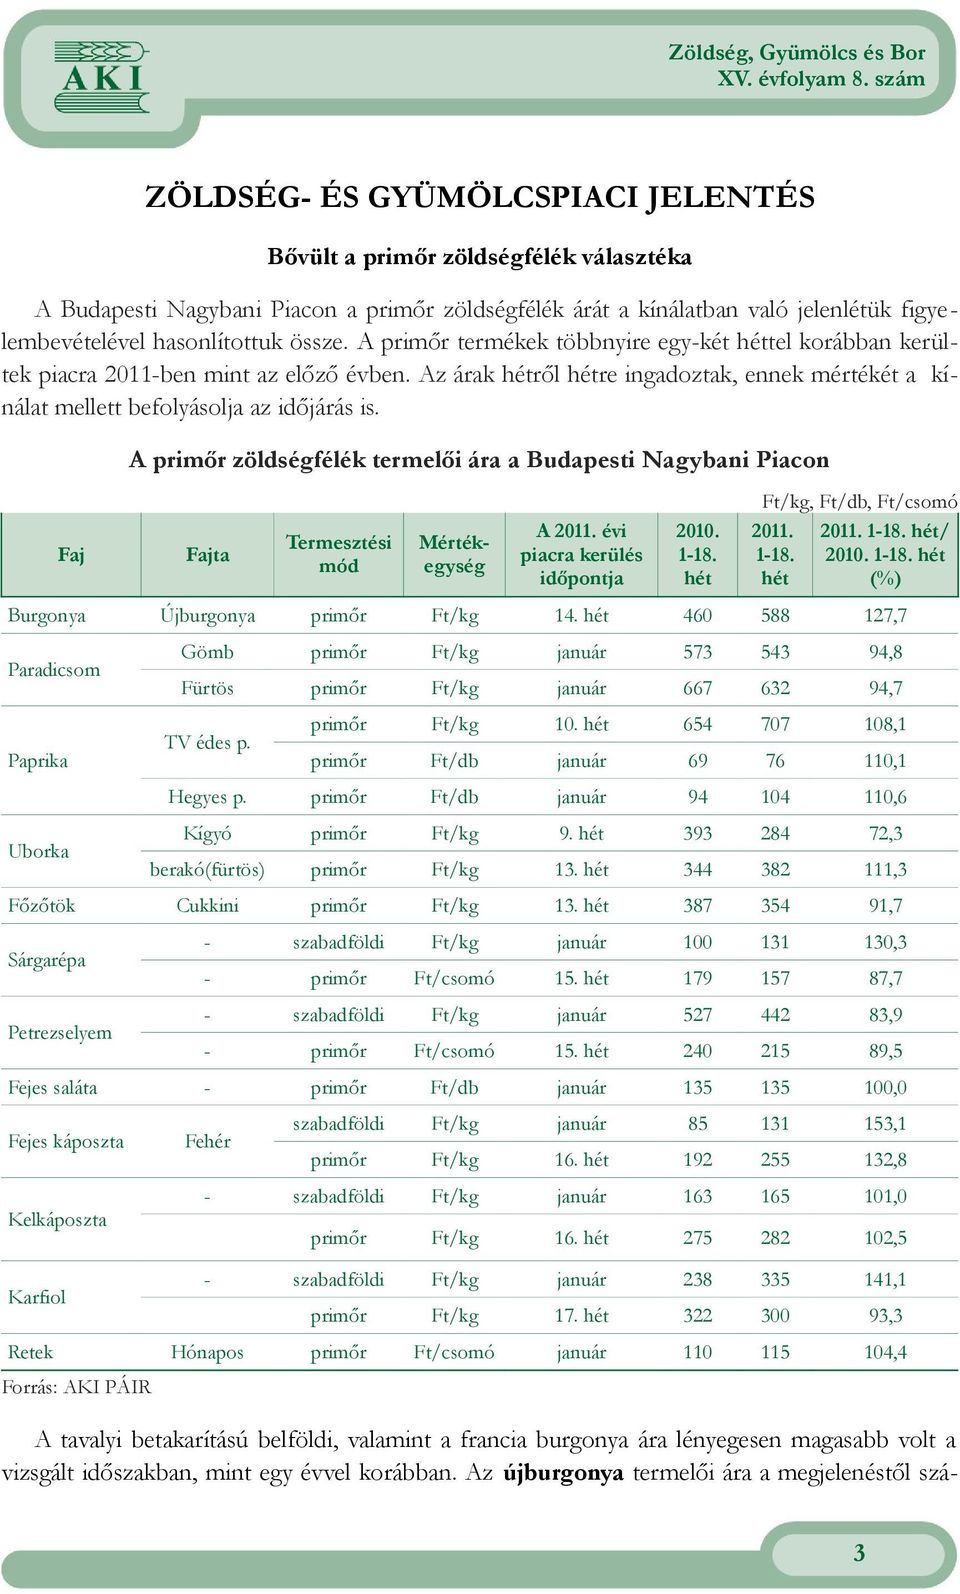 A primőr zöldségfélék termelői ára a Budapesti Nagybani Piacon Ft/kg, Ft/db, Ft/csomó Faj Fajta Termesztési mód Mértékegység A évi piacra kerülés időpontja 2010. 1-18. hét 1-18. hét 1-/ 2010.